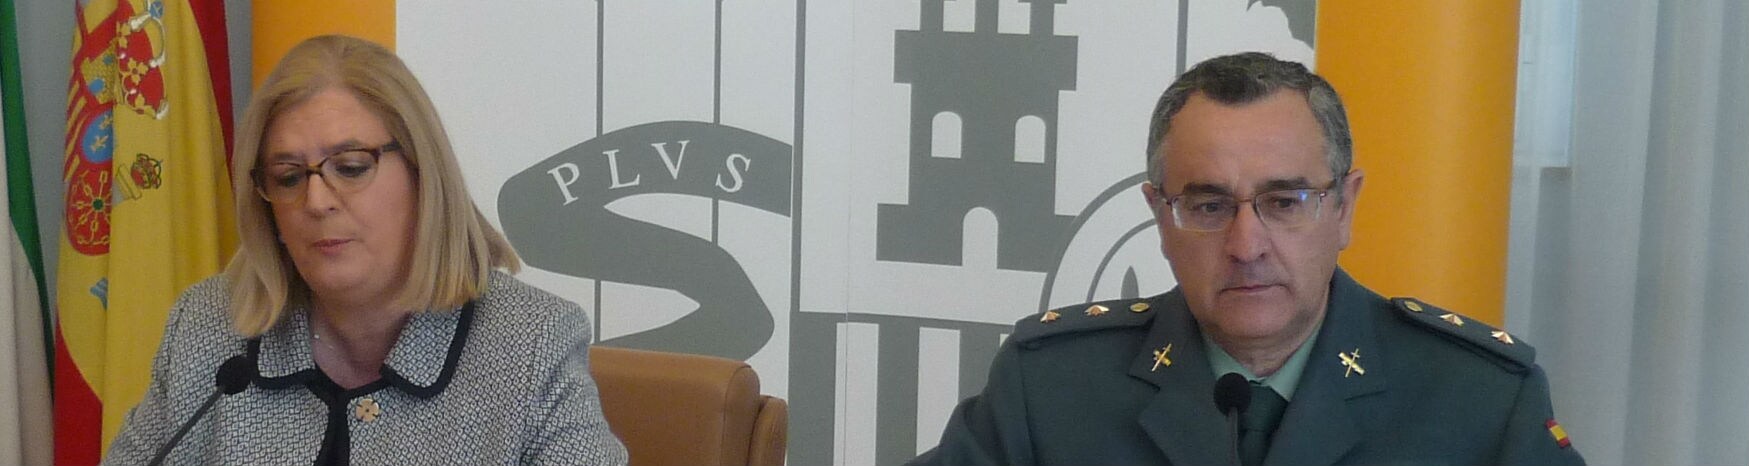 La subdelegada del Gobierno en Jaén, Francisca Molina, junto al teniente coronel de la Guardia Civil Luis Ortega.